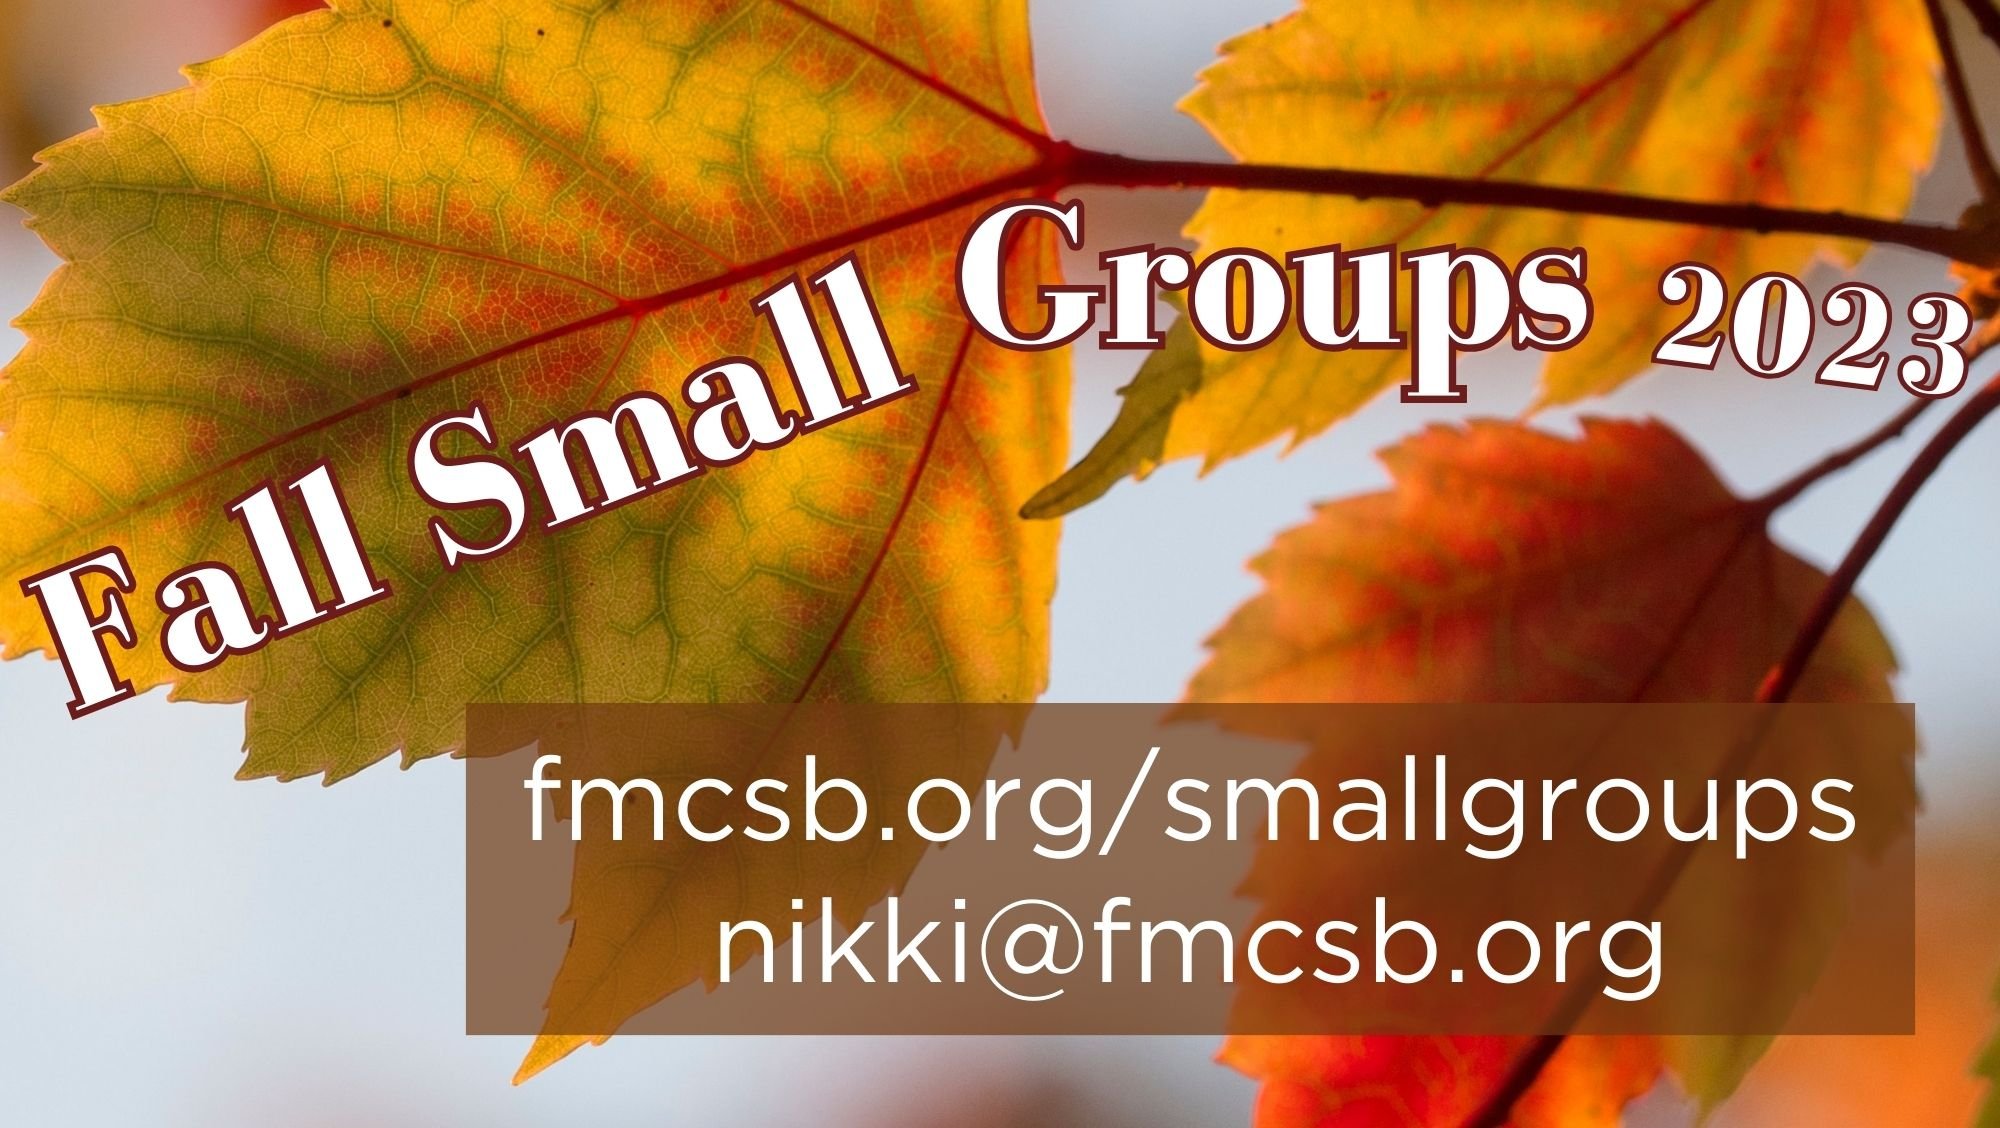 Fall Small Groups - New Life Fellowship